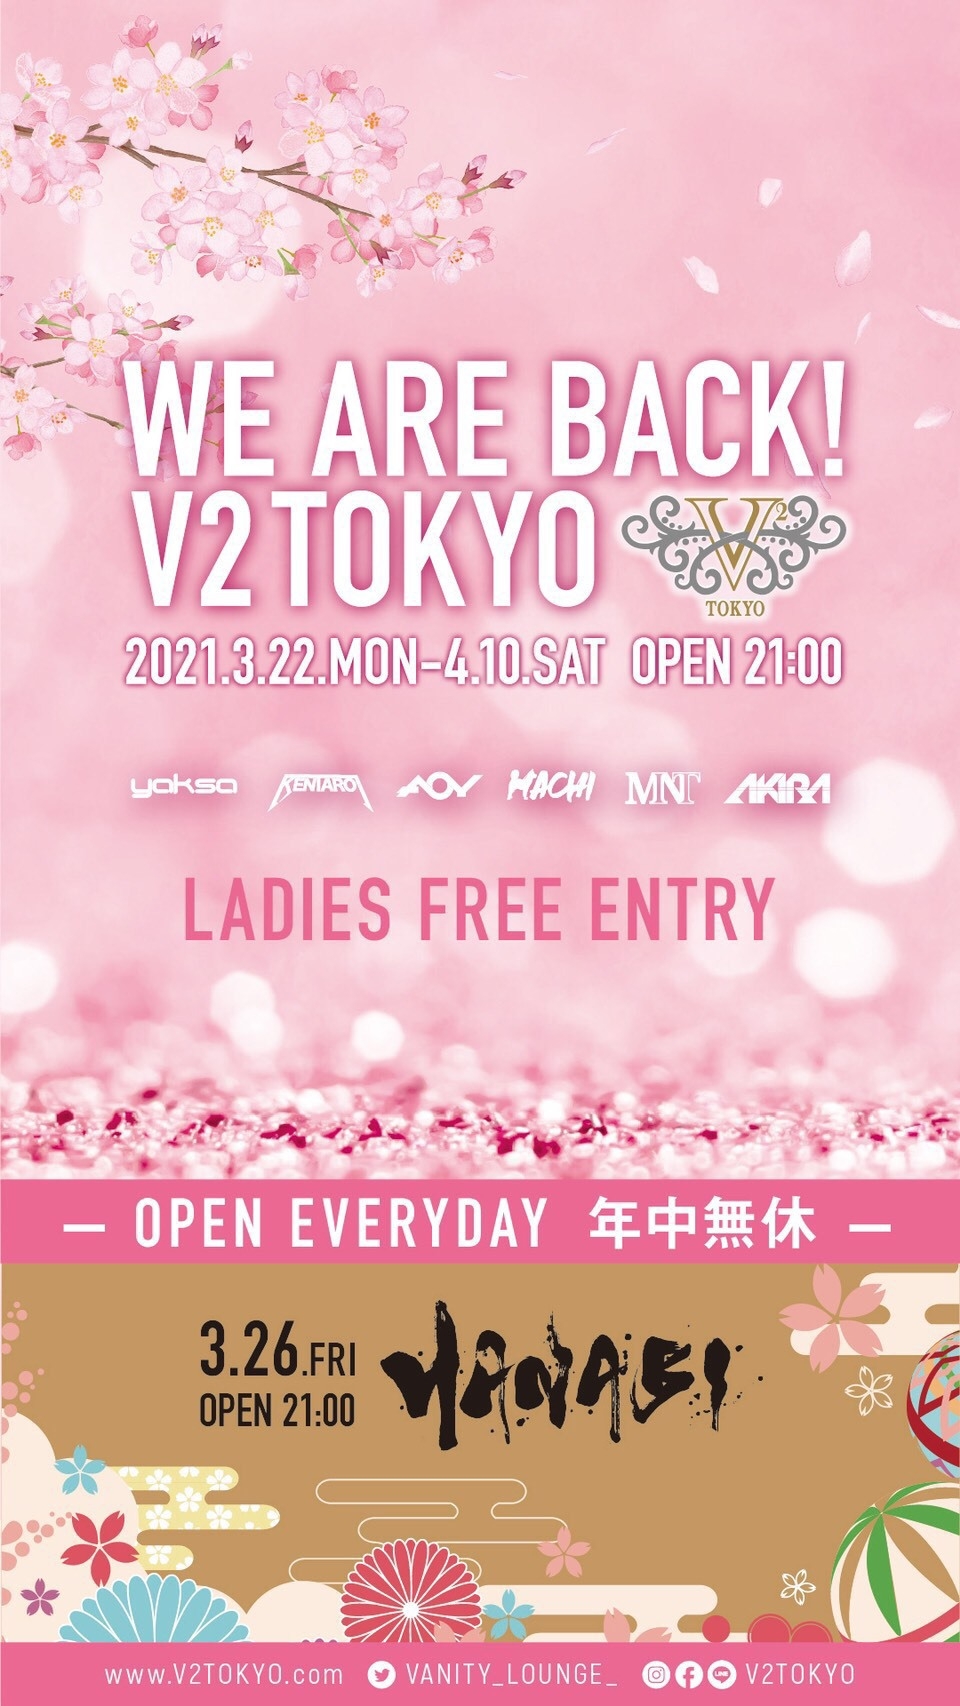 2021.4.07(水) WE ARE BACK V2 TOKYO @V2 TOKYO